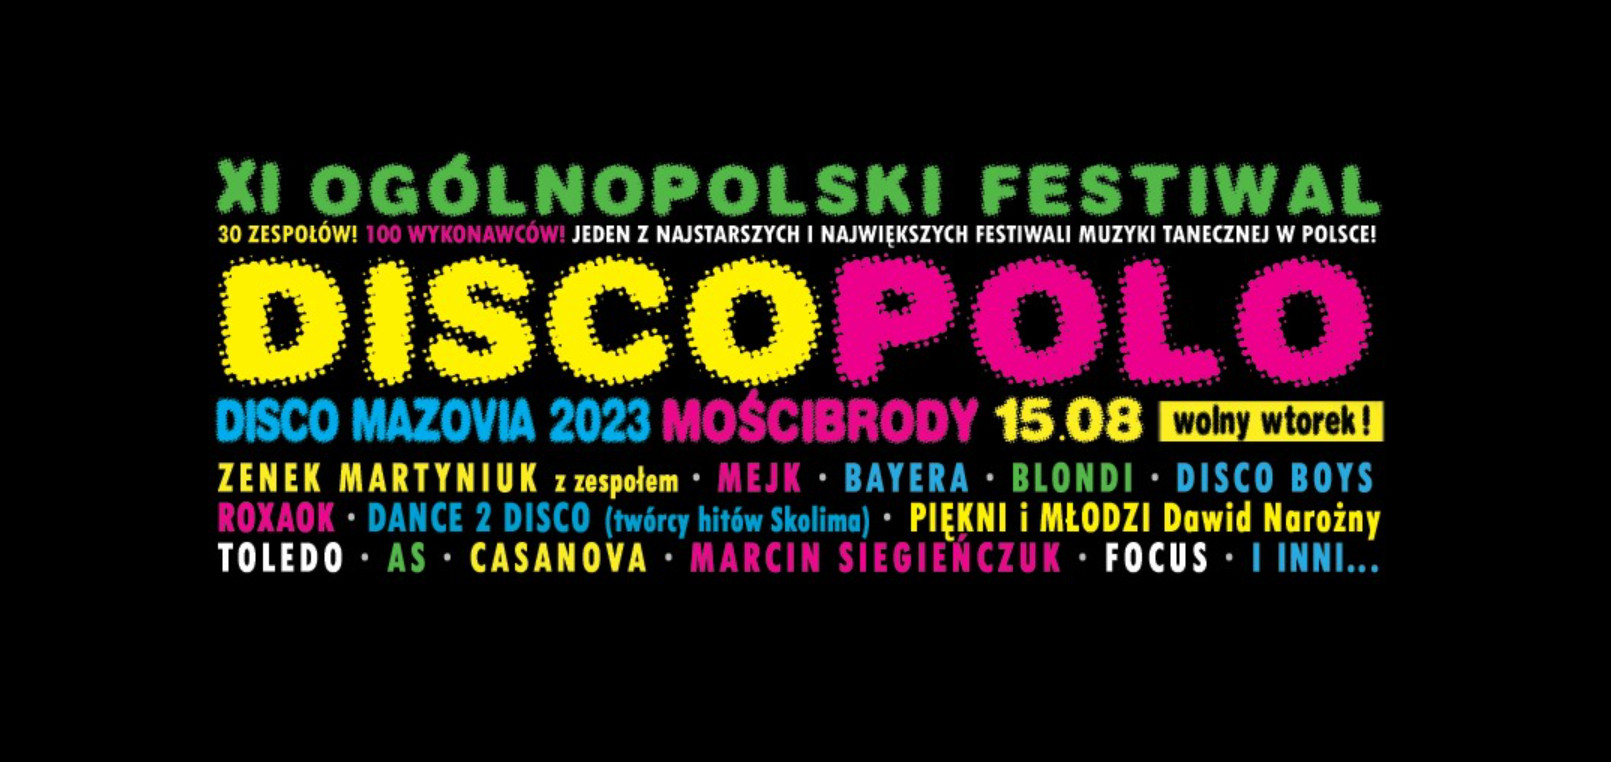 Już dziś! XI Ogólnopolski Festiwal Disco Polo Disco Mazovia - Mościbrody 2023 - kto wystąpi? O której impreza?